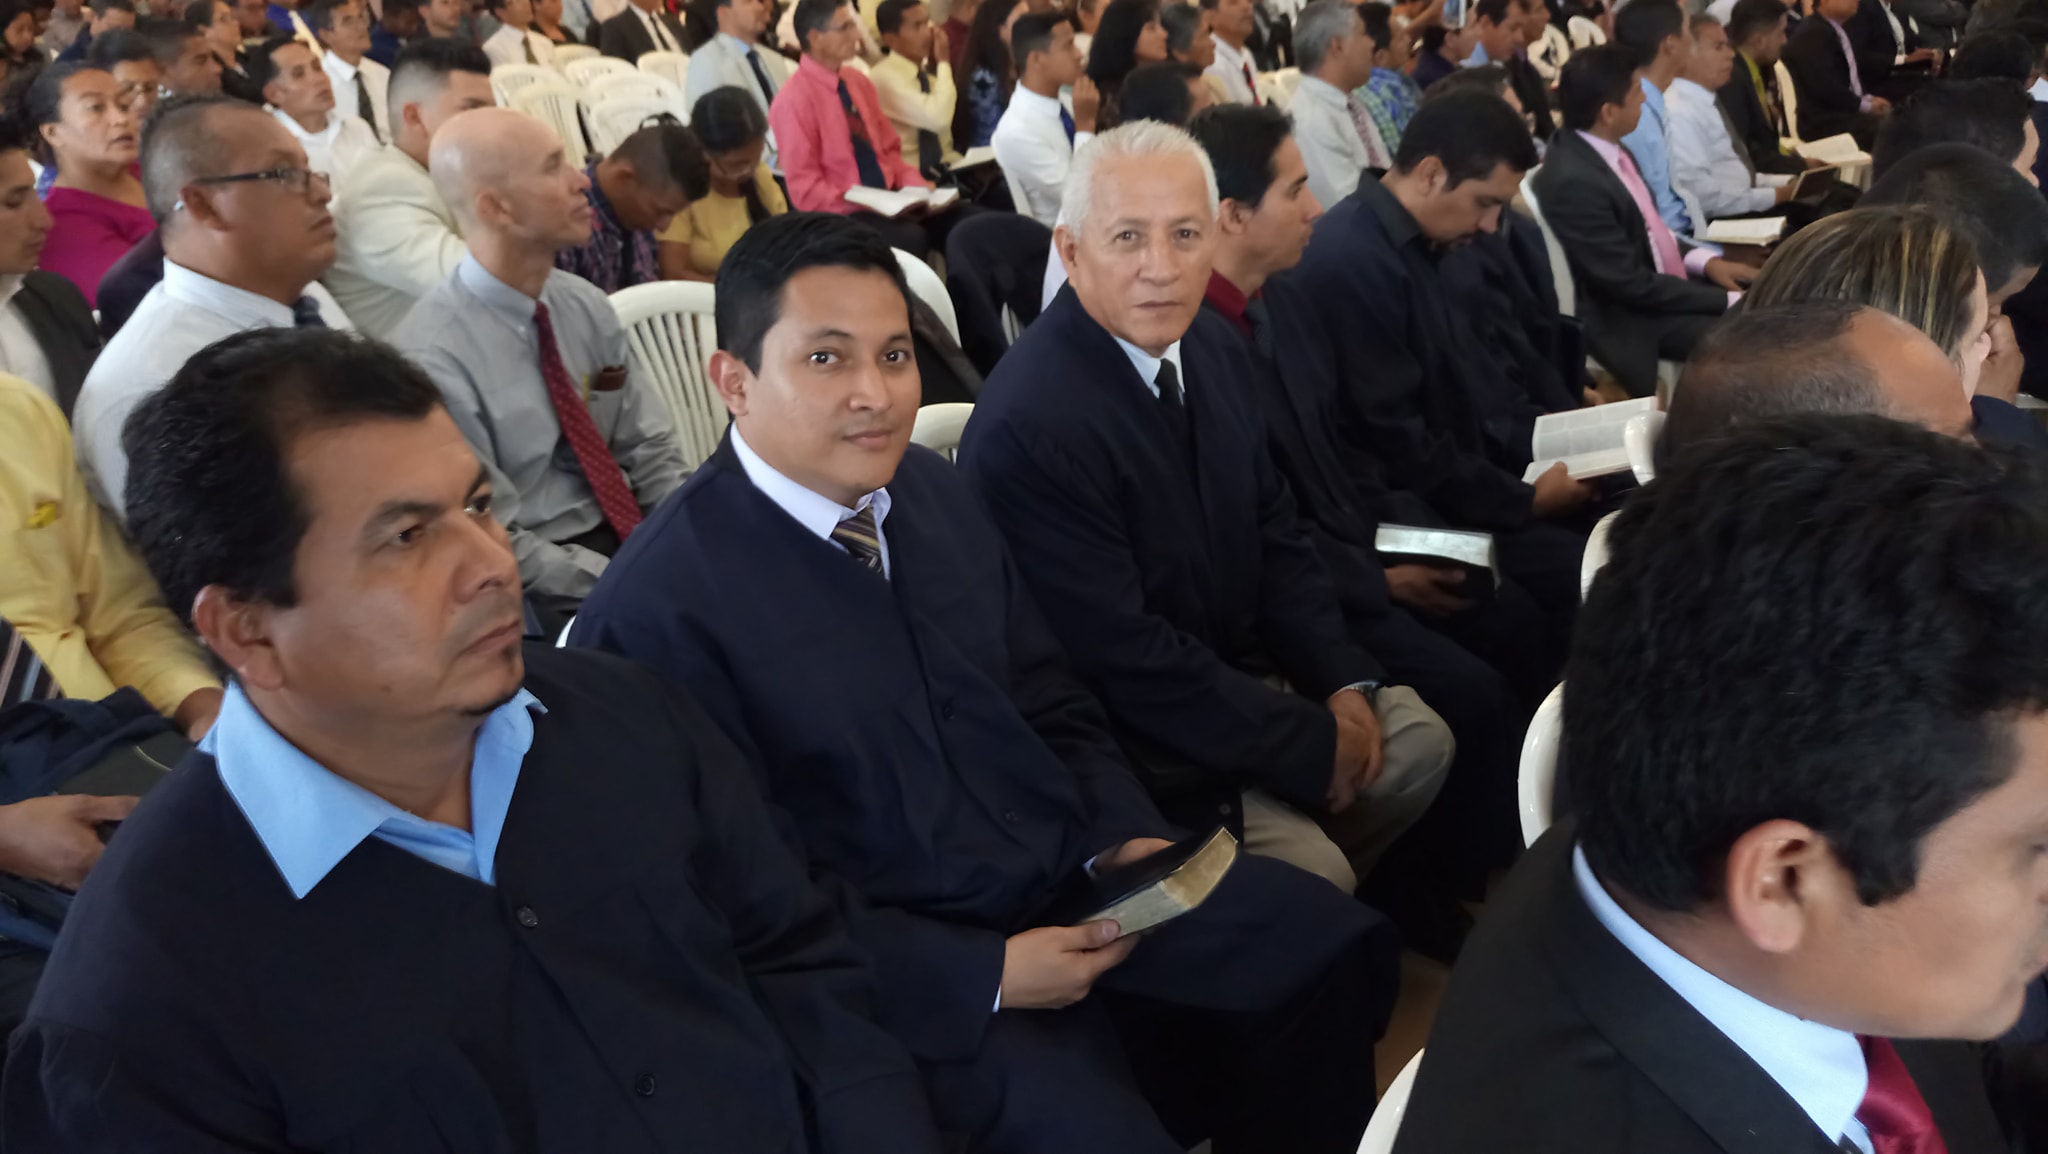 Iglesia adventista en Ecuador realiza graduación de diplomado de líderes -  Noticias - Adventistas